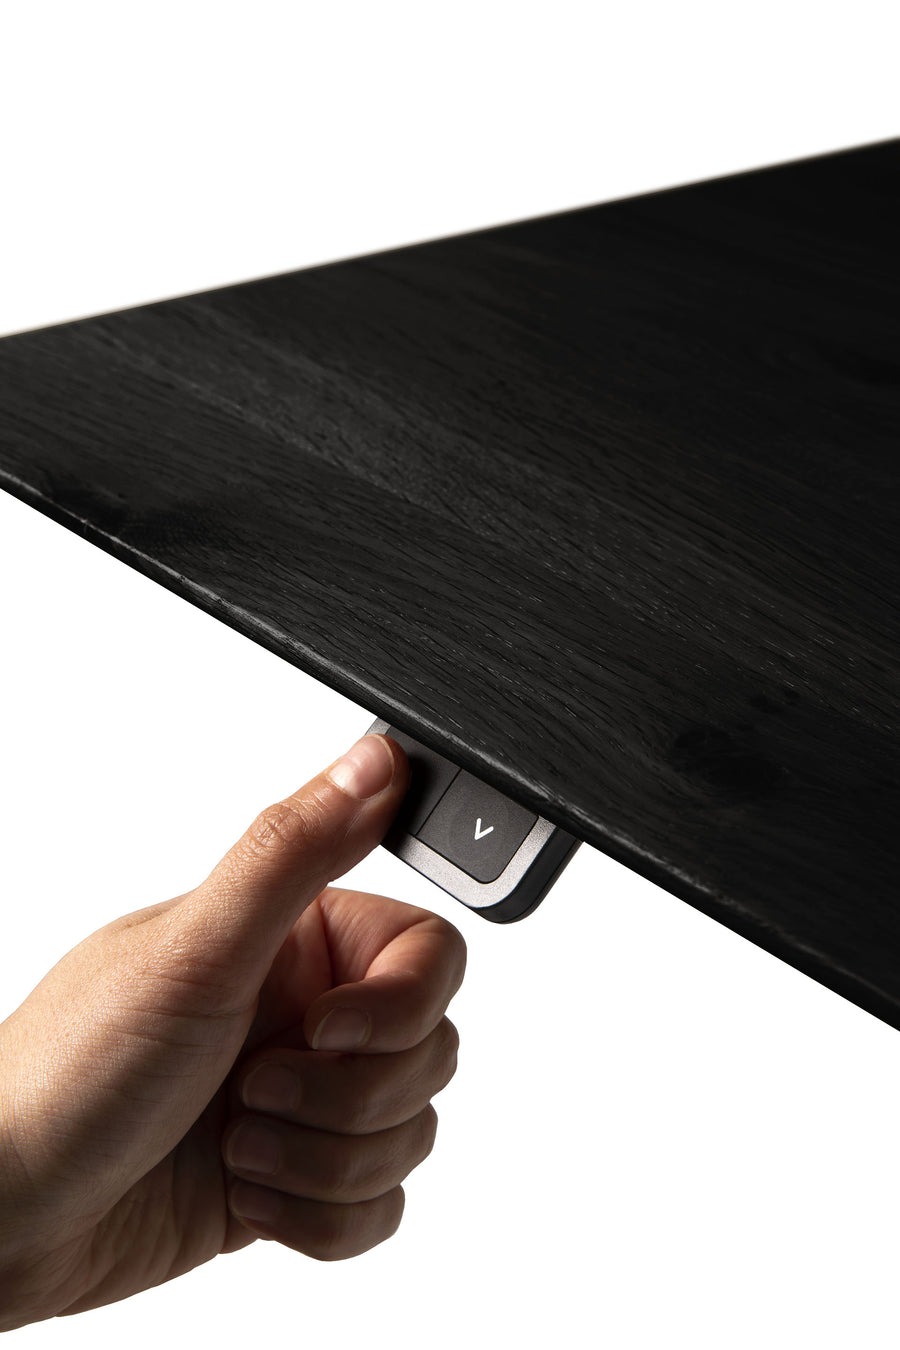 Bok Adjustable Desk - Black Oak